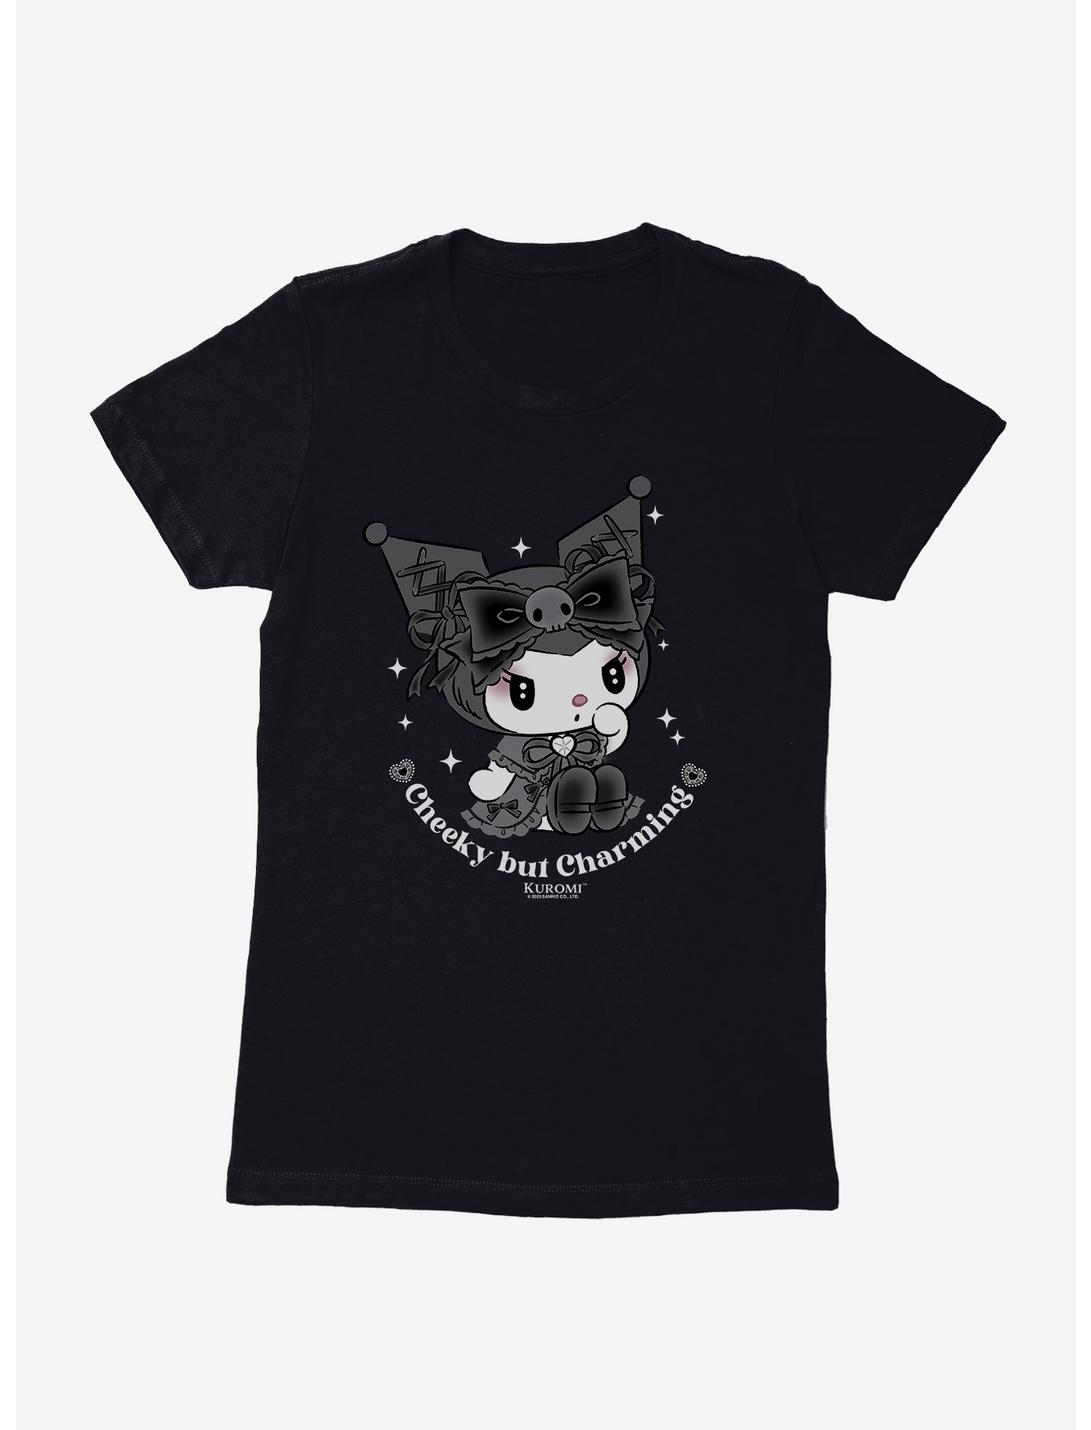 Kuromi Cheeky But Charming Womens T-Shirt, BLACK, hi-res